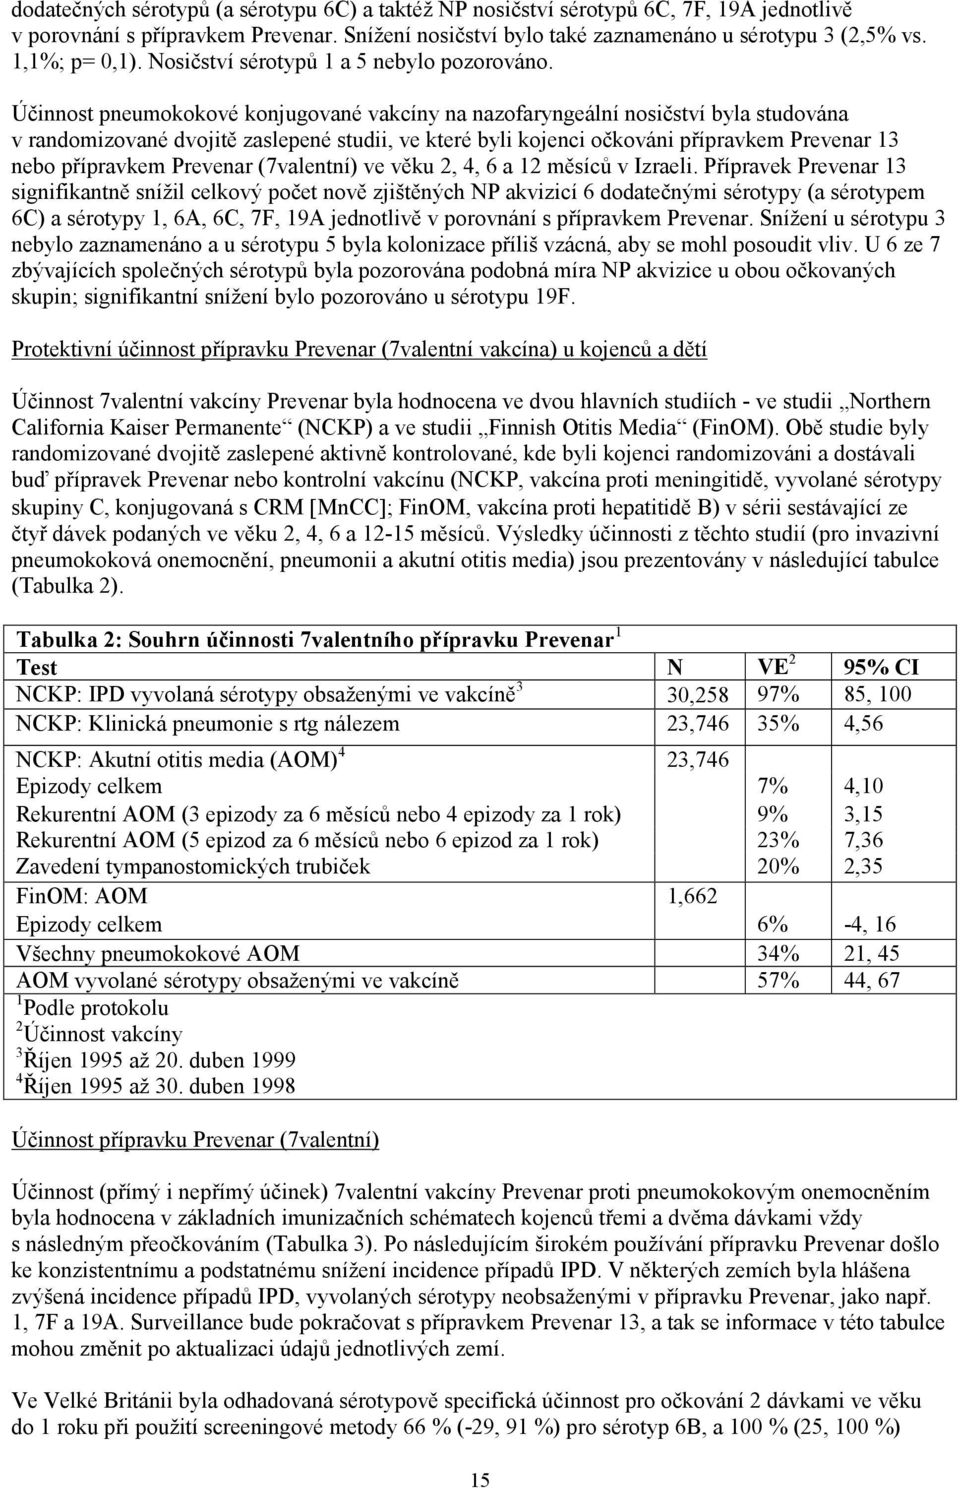 Účinnost pneumokokové konjugované vakcíny na nazofaryngeální nosičství byla studována v randomizované dvojitě zaslepené studii, ve které byli kojenci očkováni přípravkem Prevenar 13 nebo přípravkem